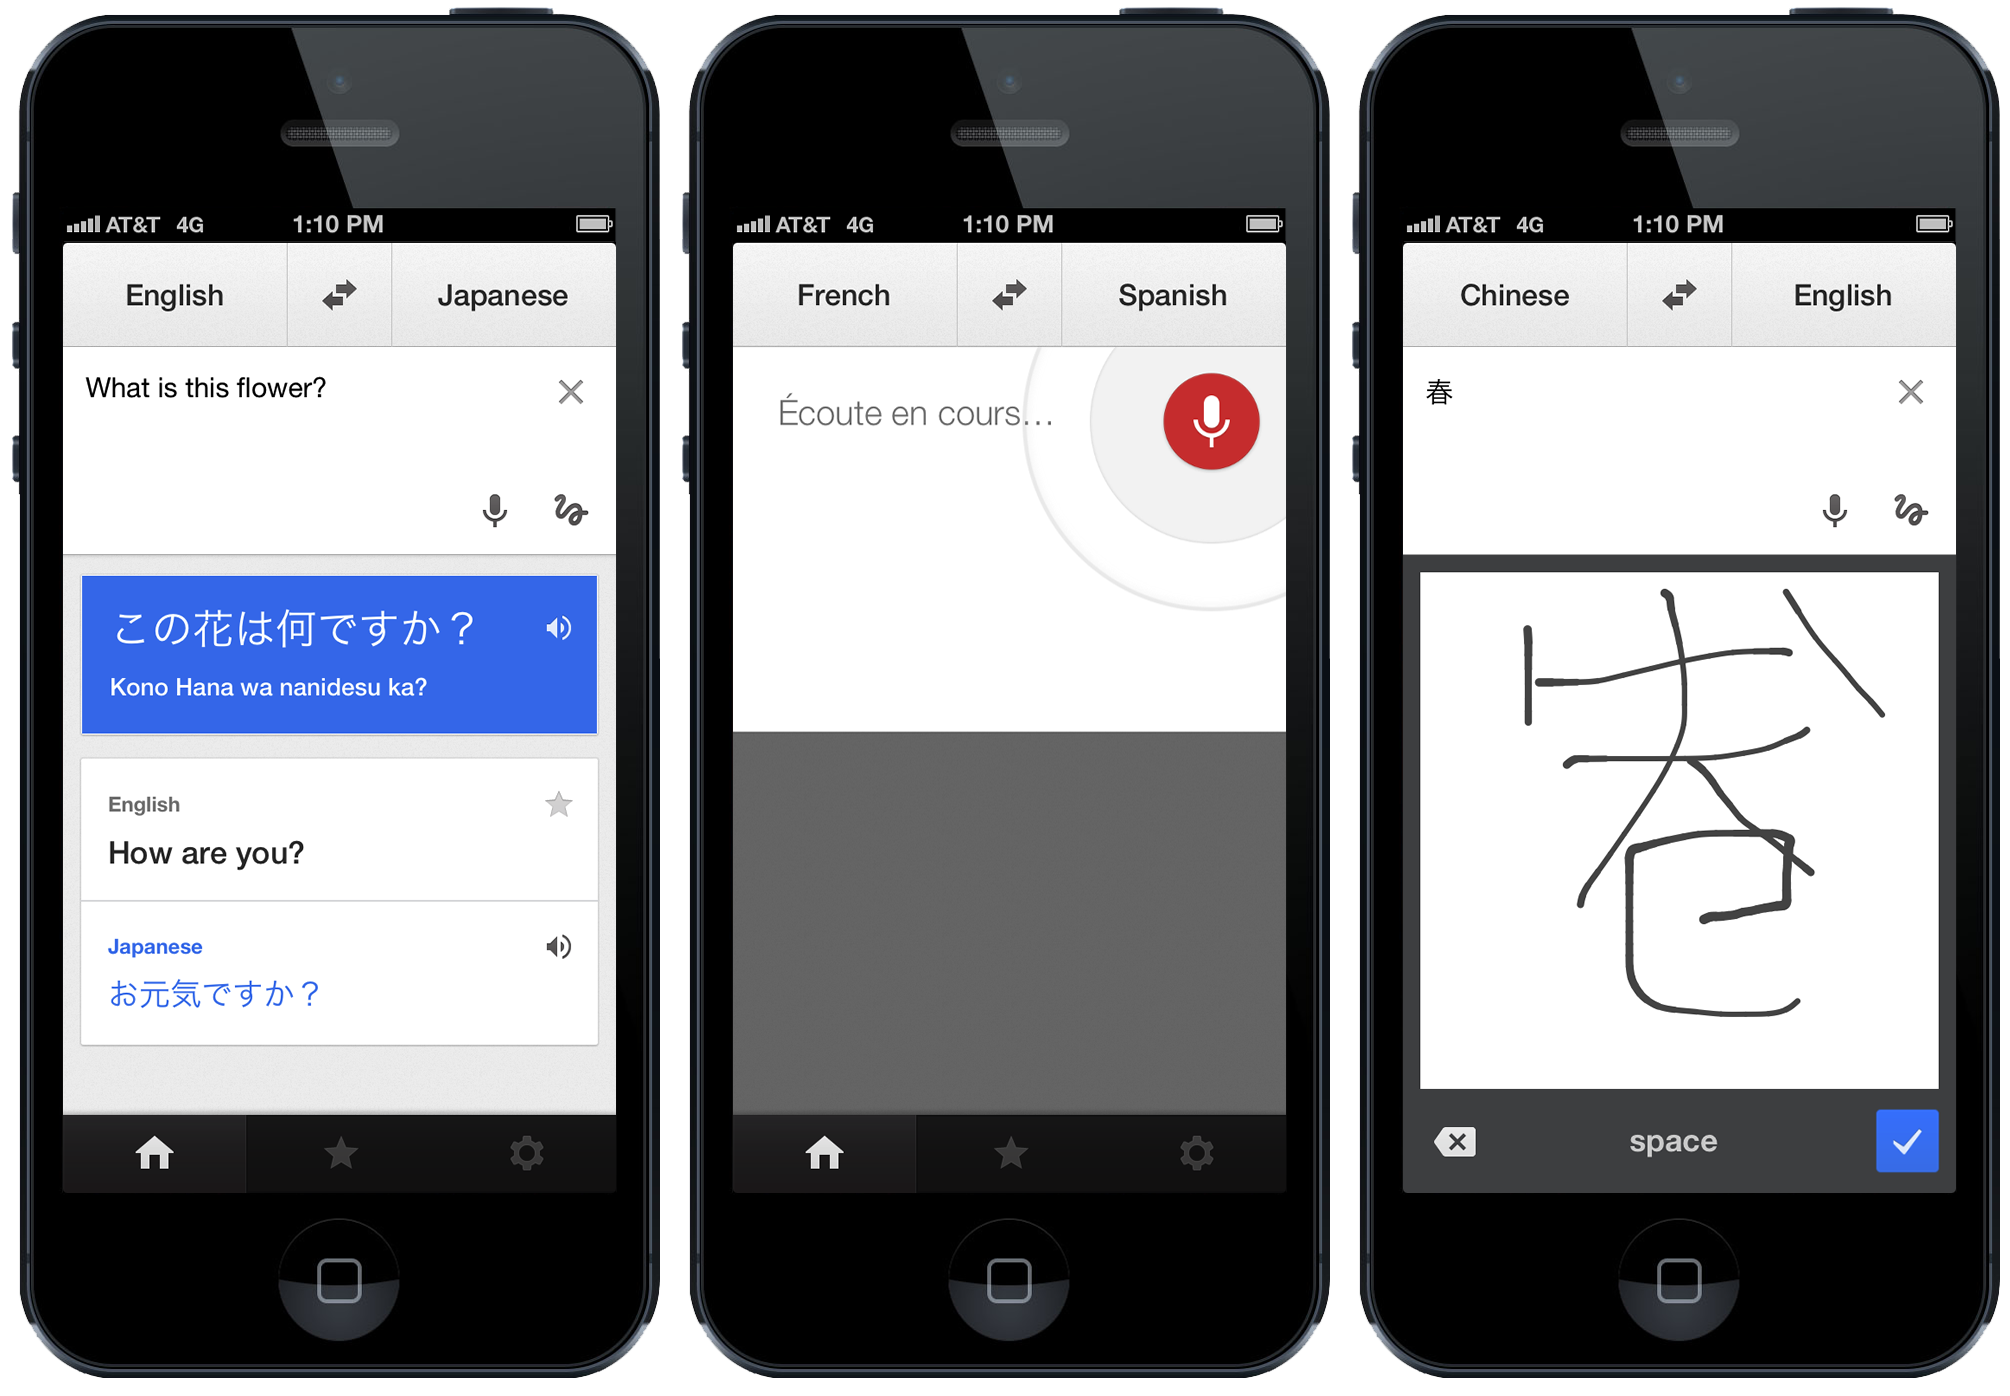 "جوجل" تدعم الكتابة باليد في نسخة تطبيق جوجل للترجمة على "iOS"